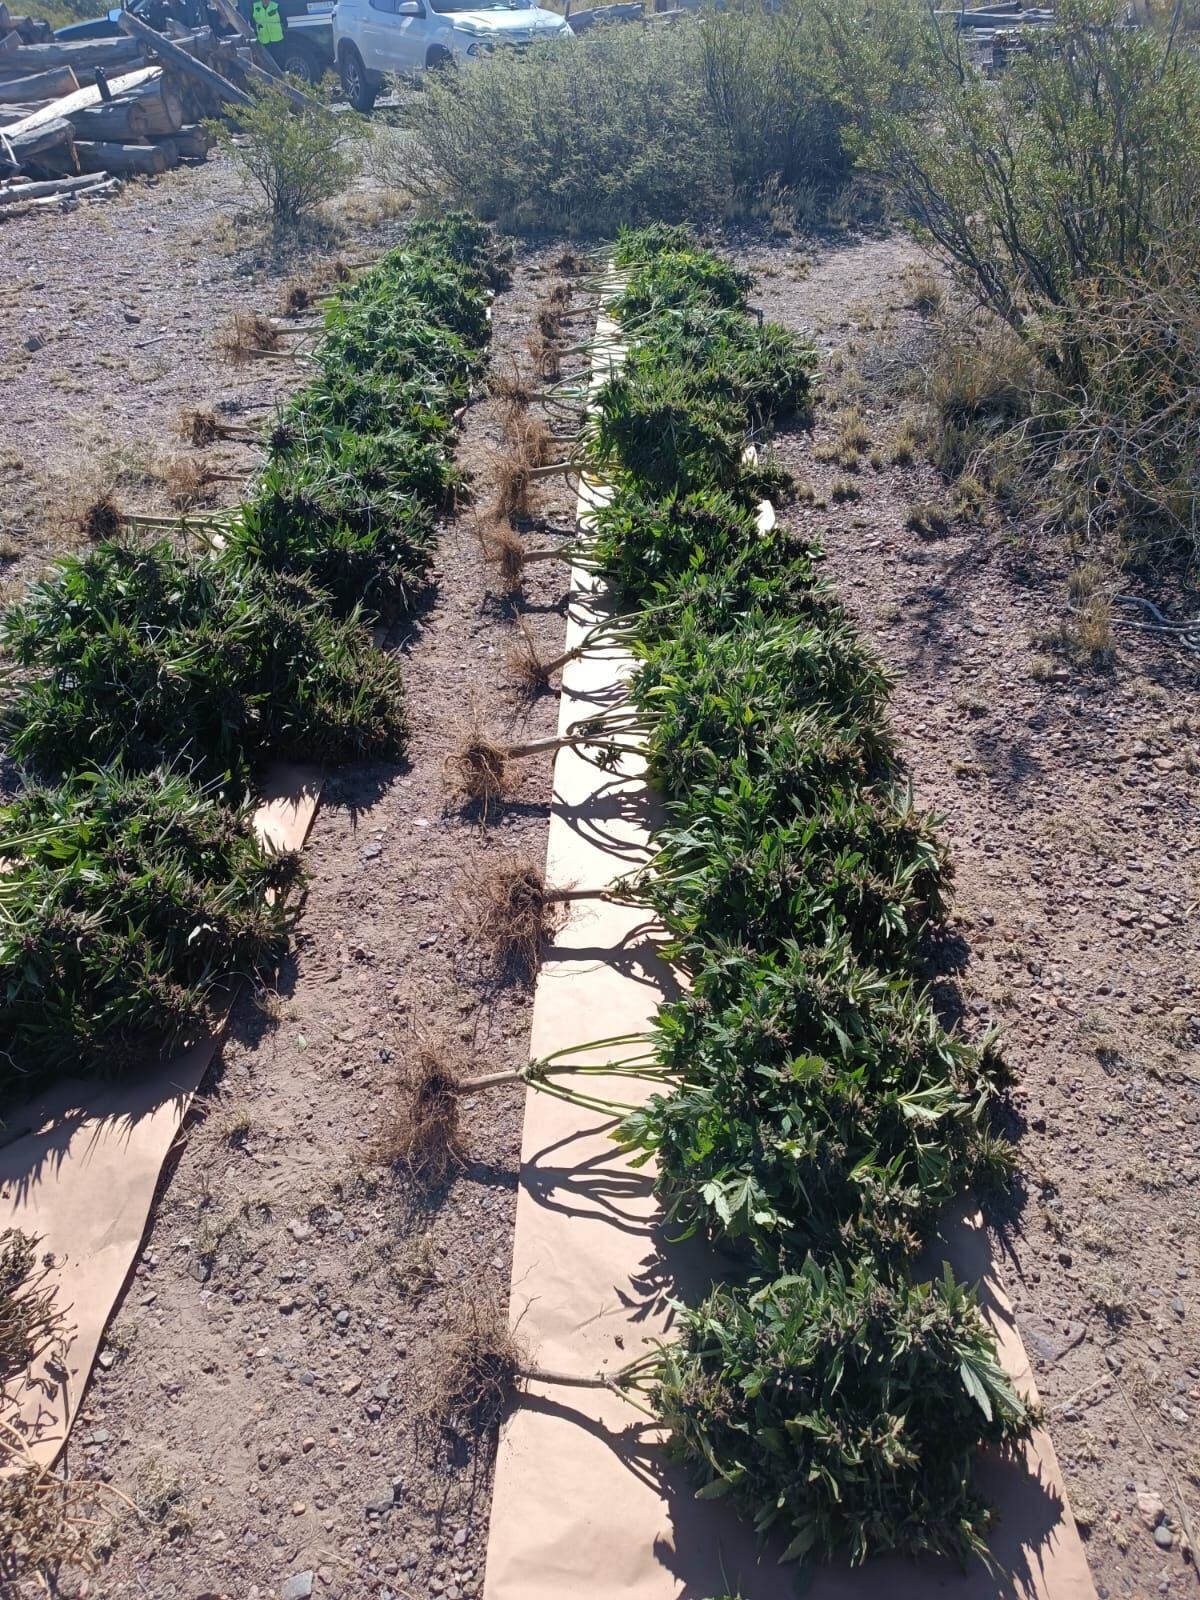 Las plantas de marihuana decomisadas en Uspallata. Gentileza Gendarmería Nacional.